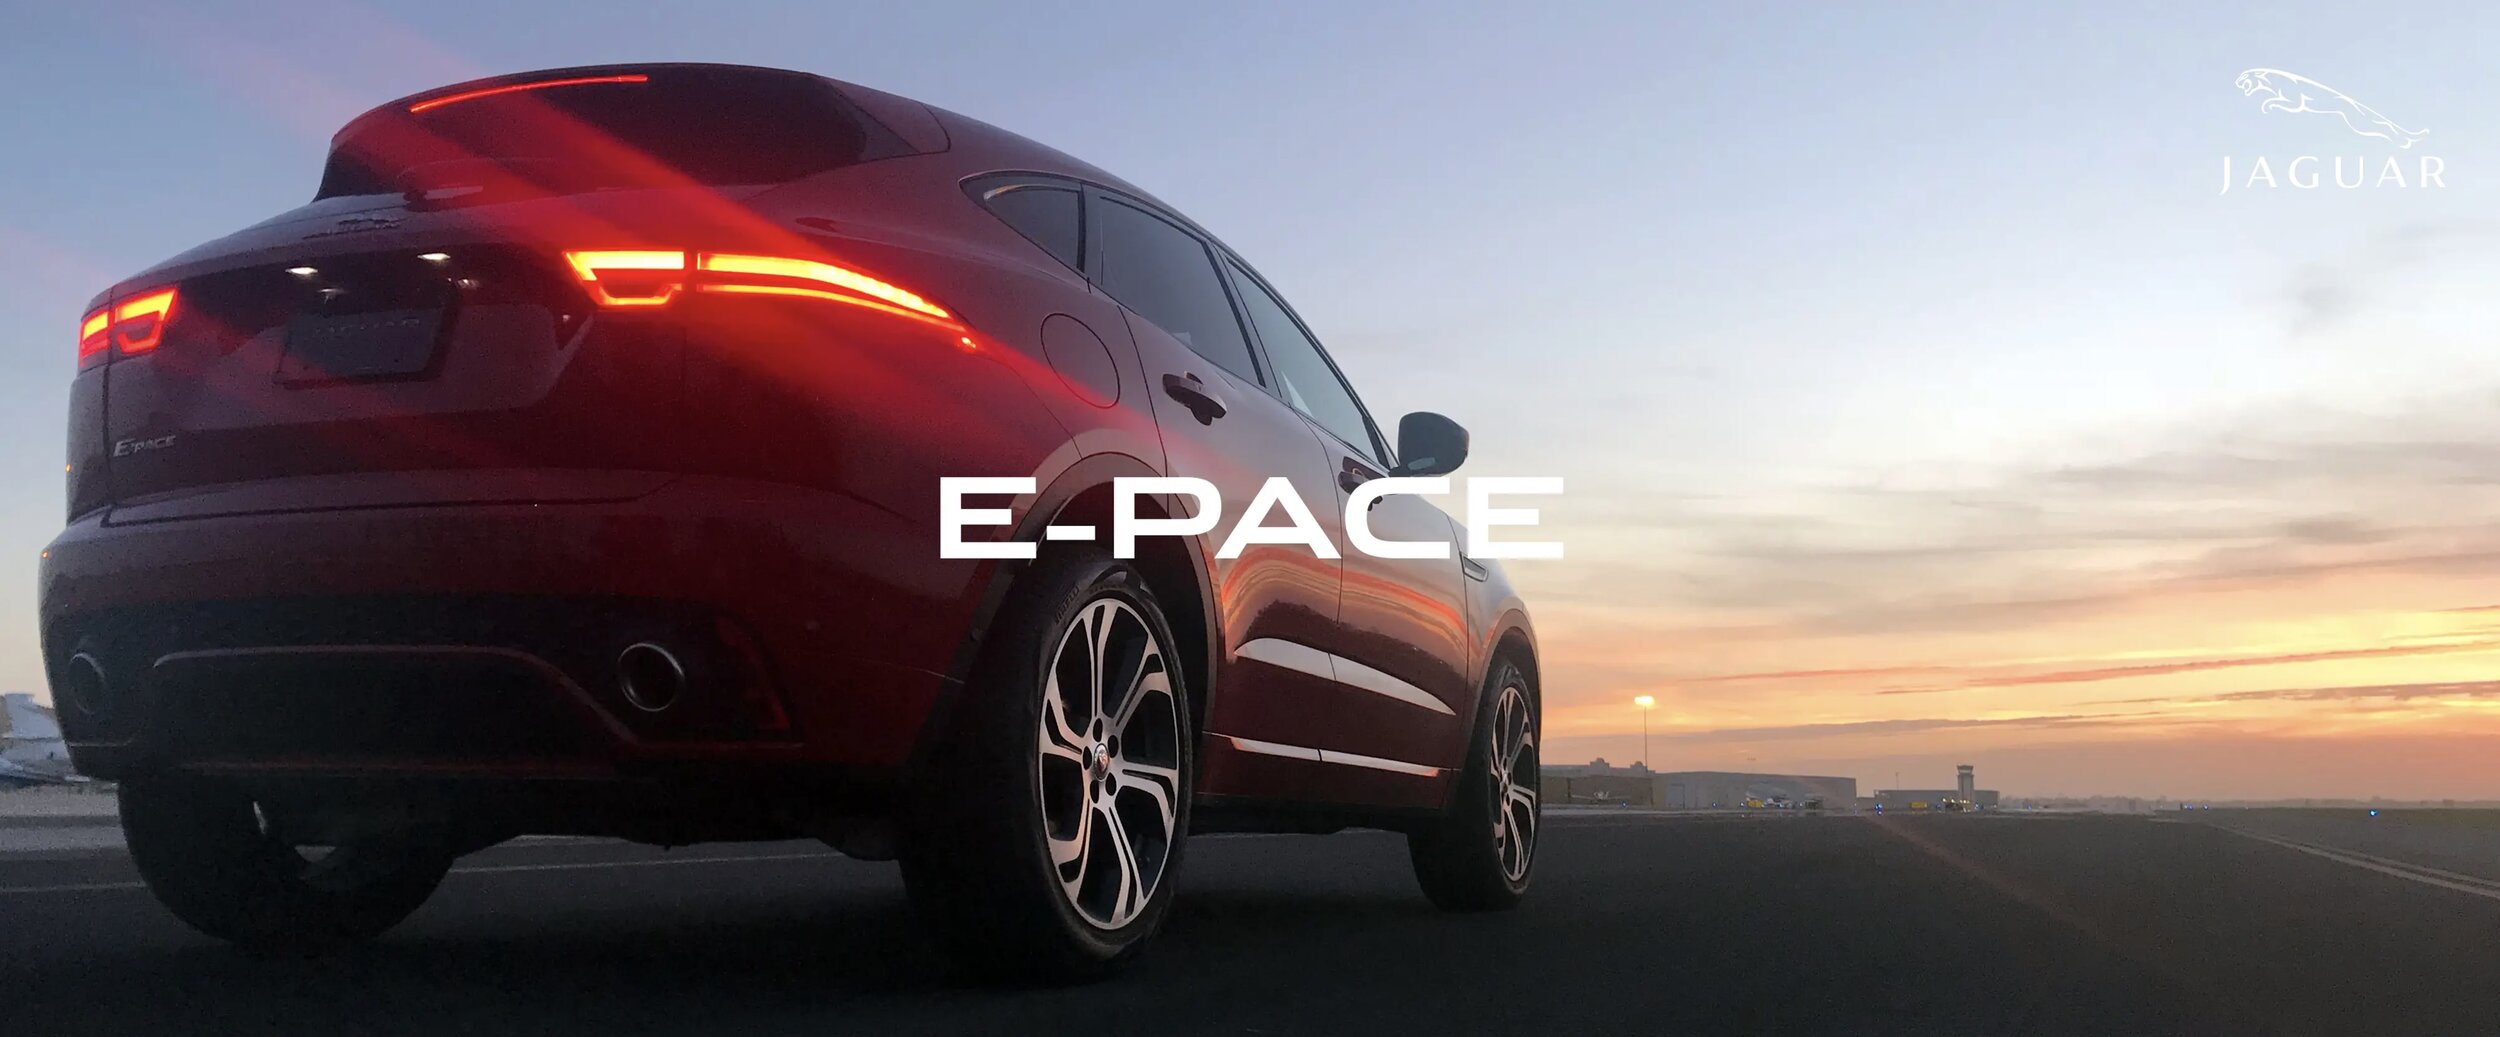 E-Pace - Jaguar